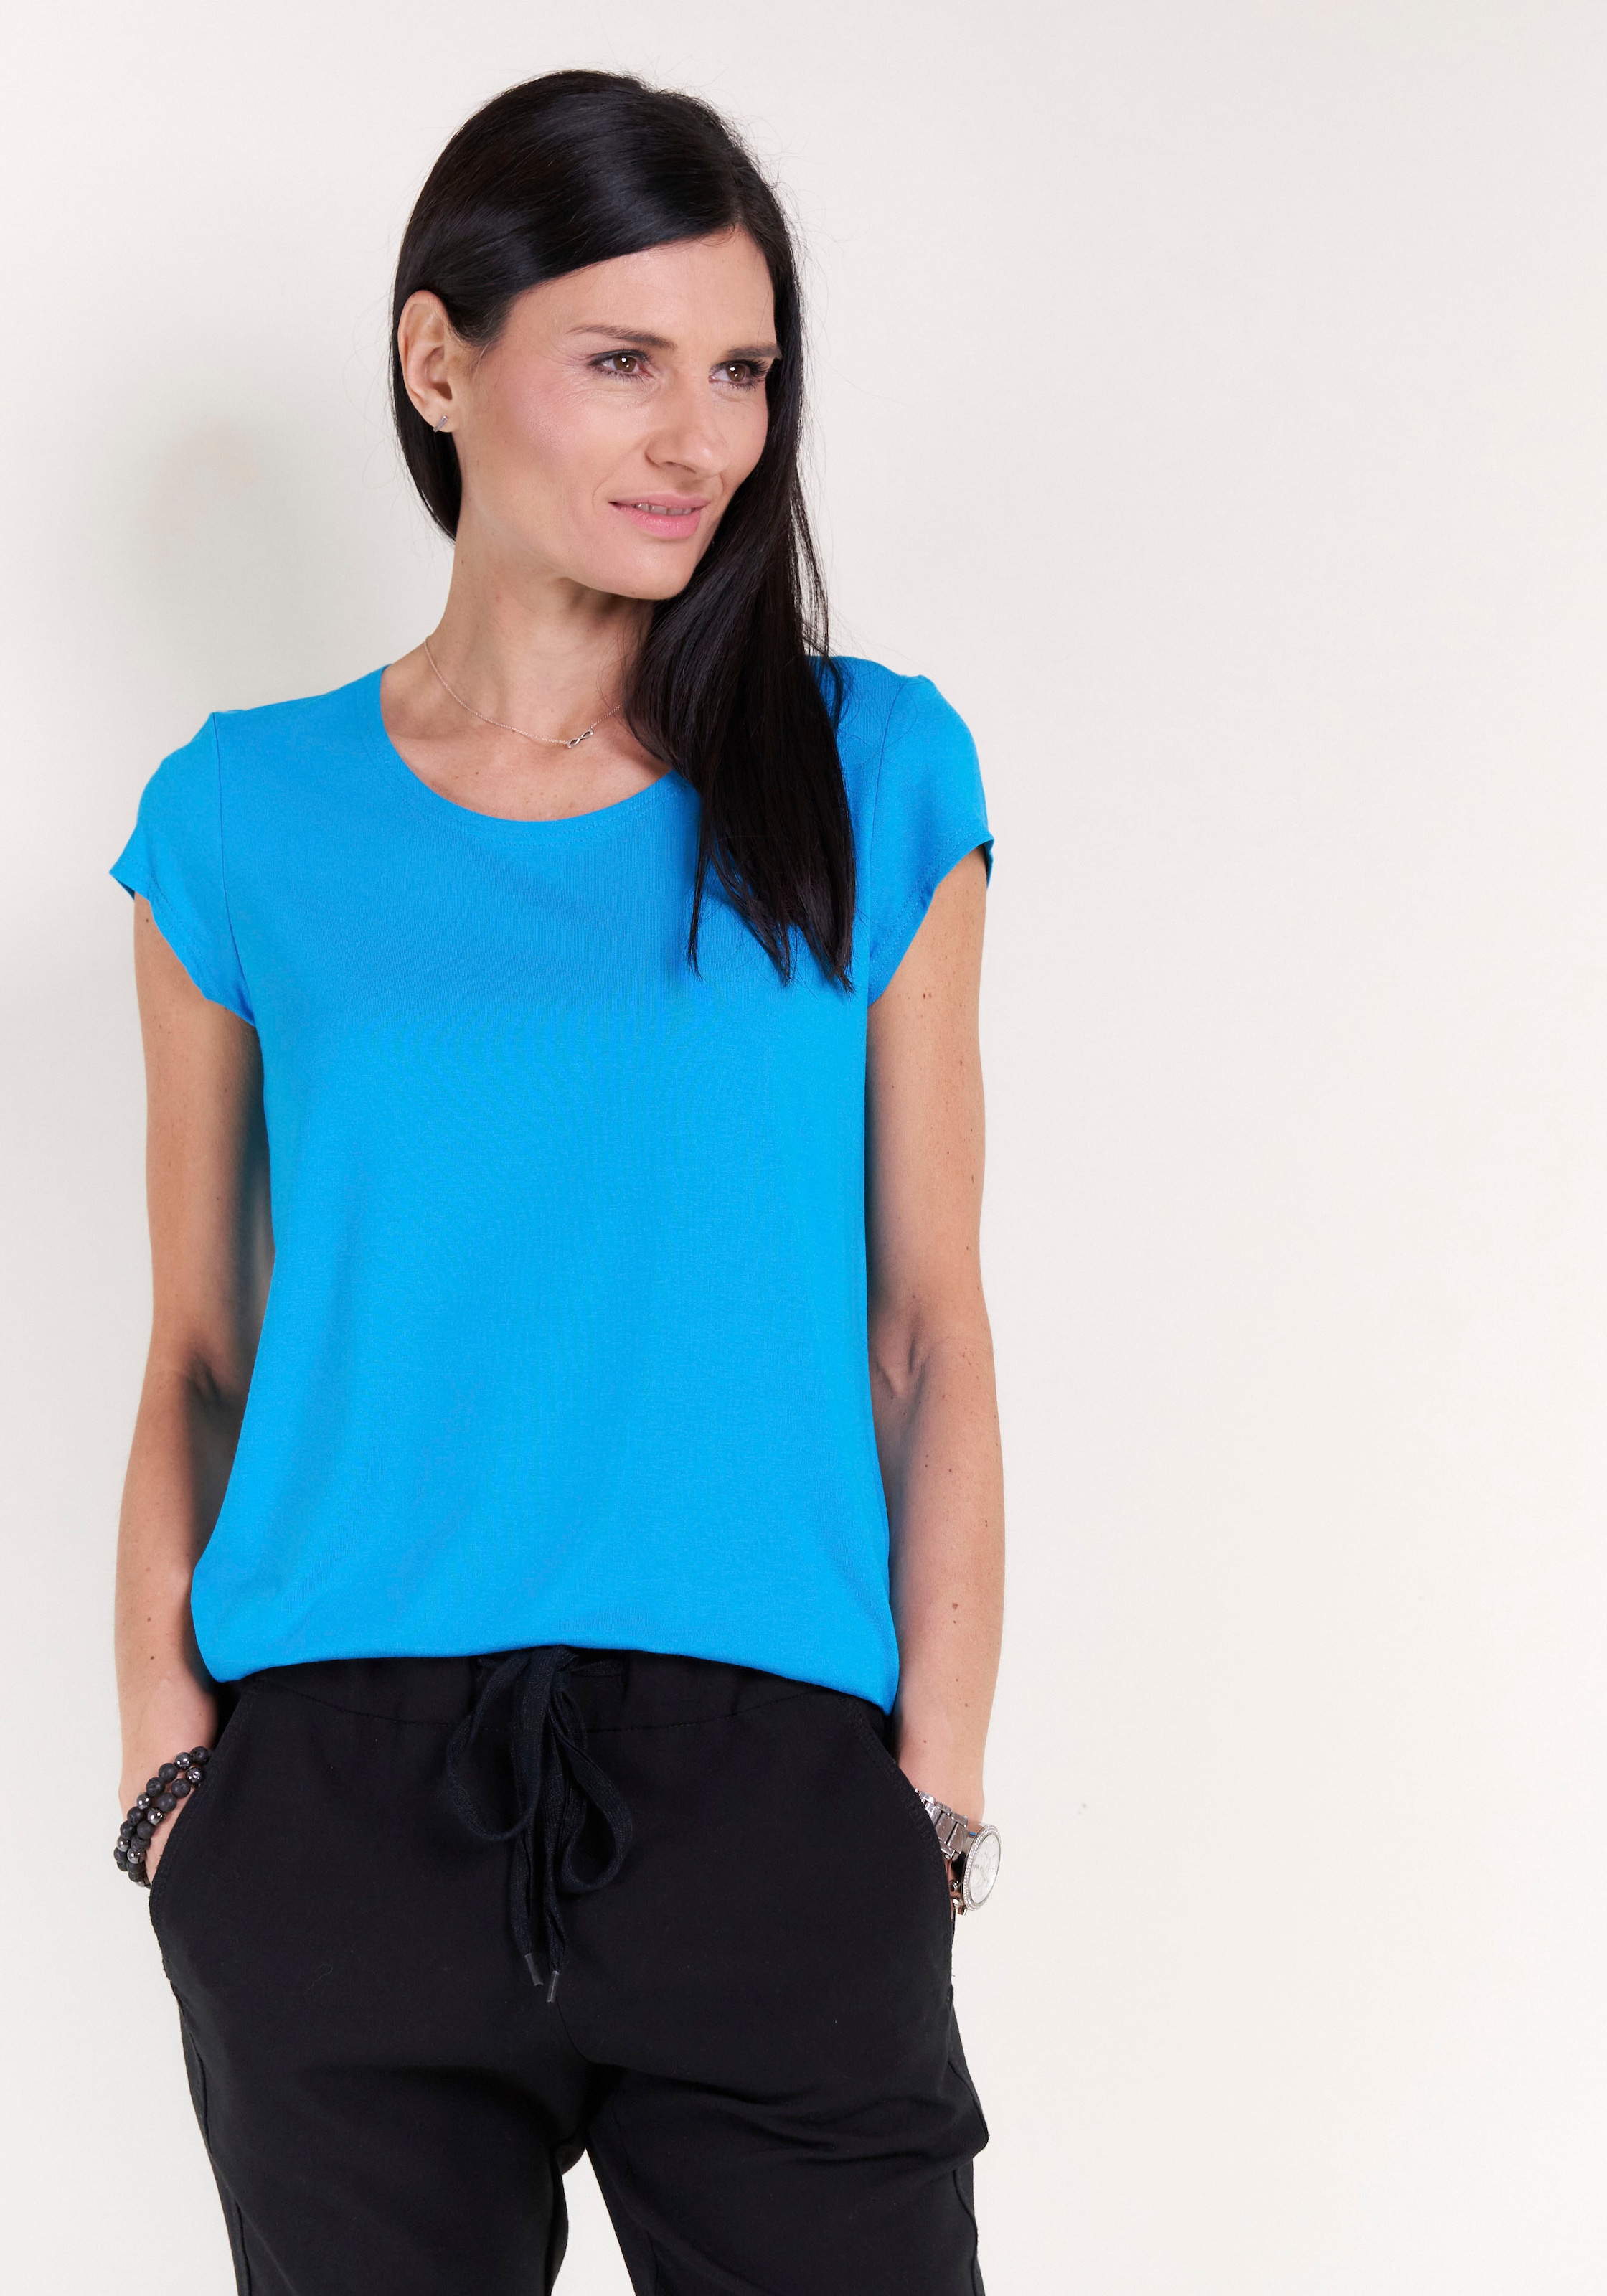 Seidel Moden Rundhalsshirt, unifarben mit Kappenärmel, Made in Germany  online kaufen